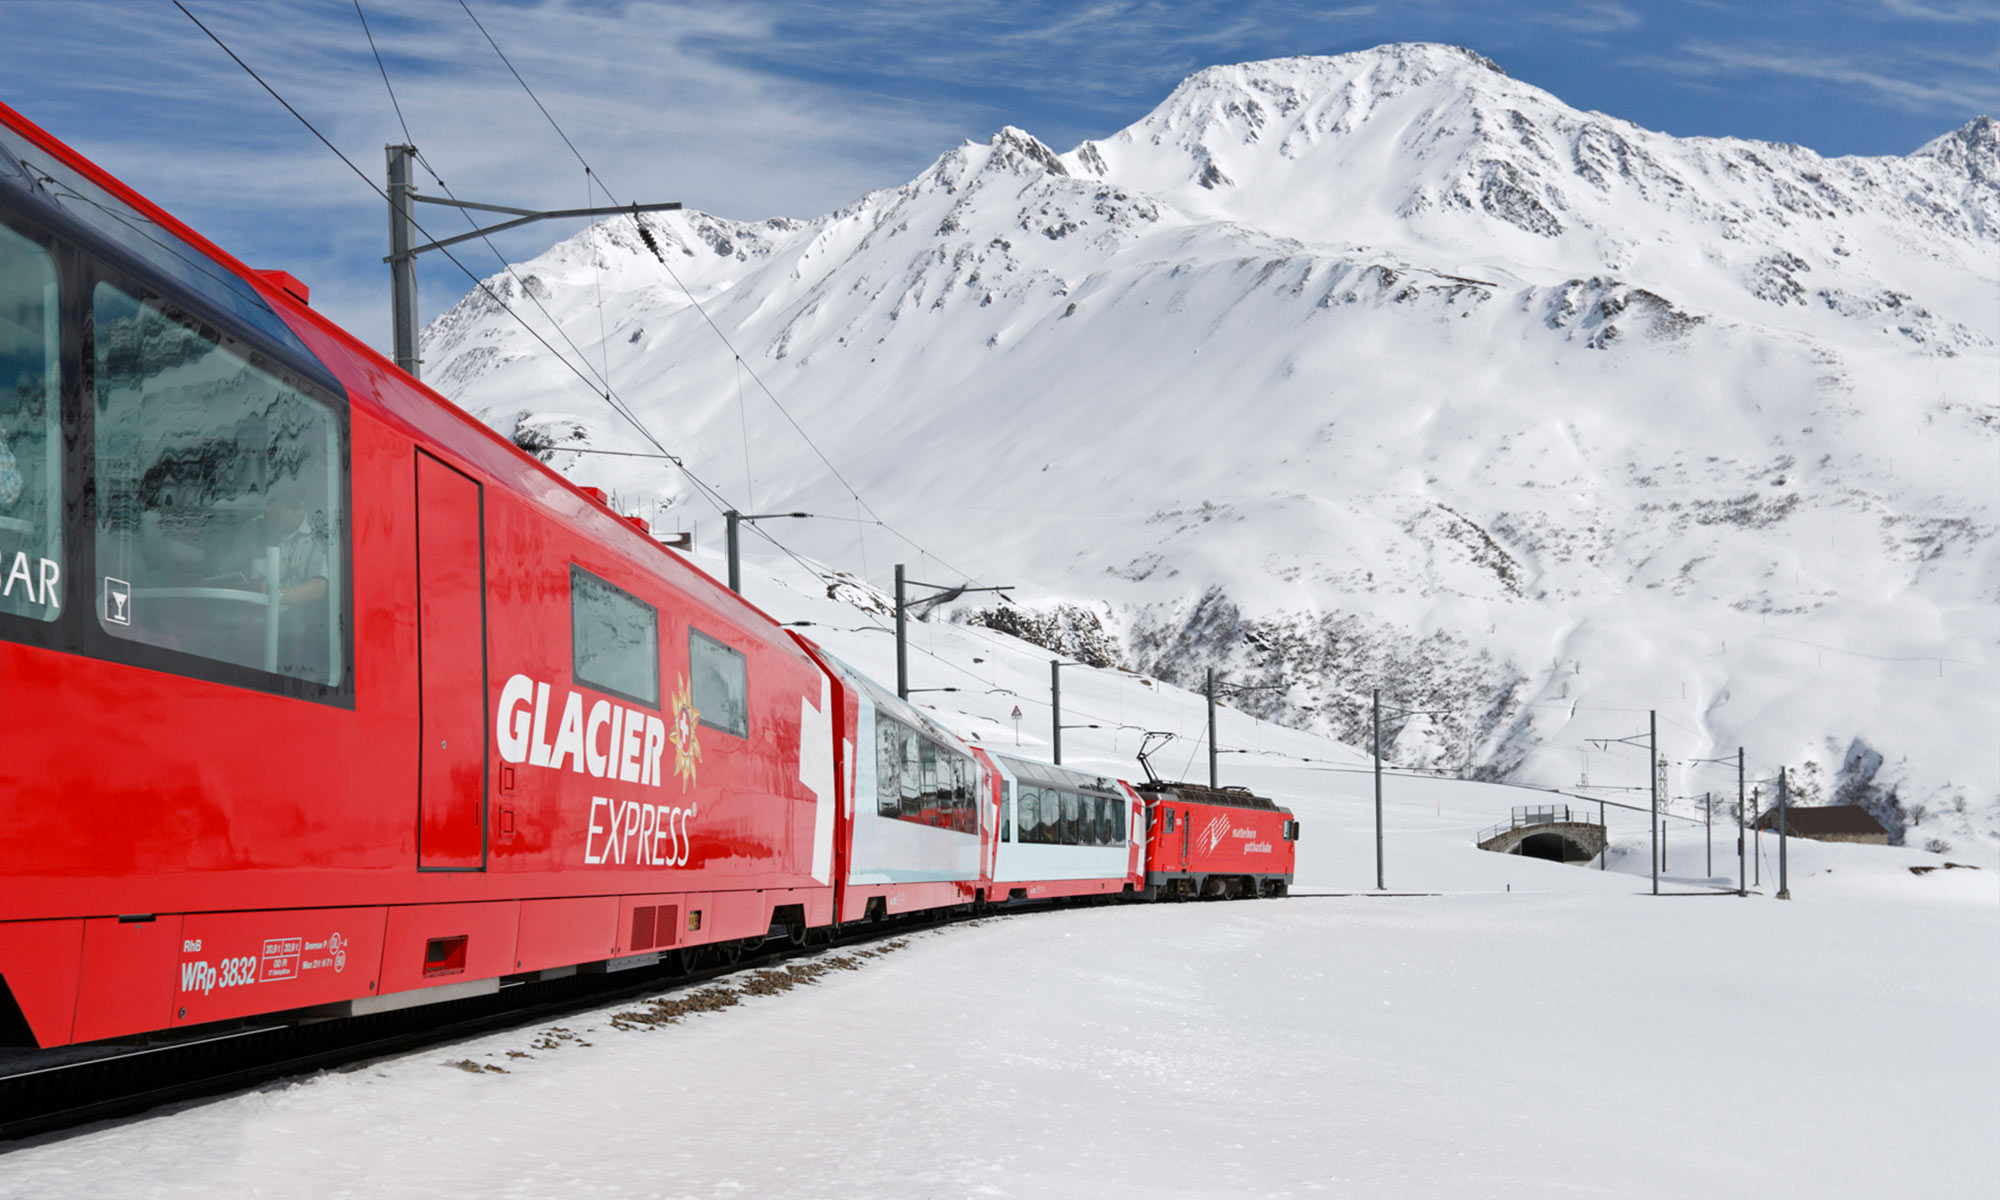 Train panoramique suisse